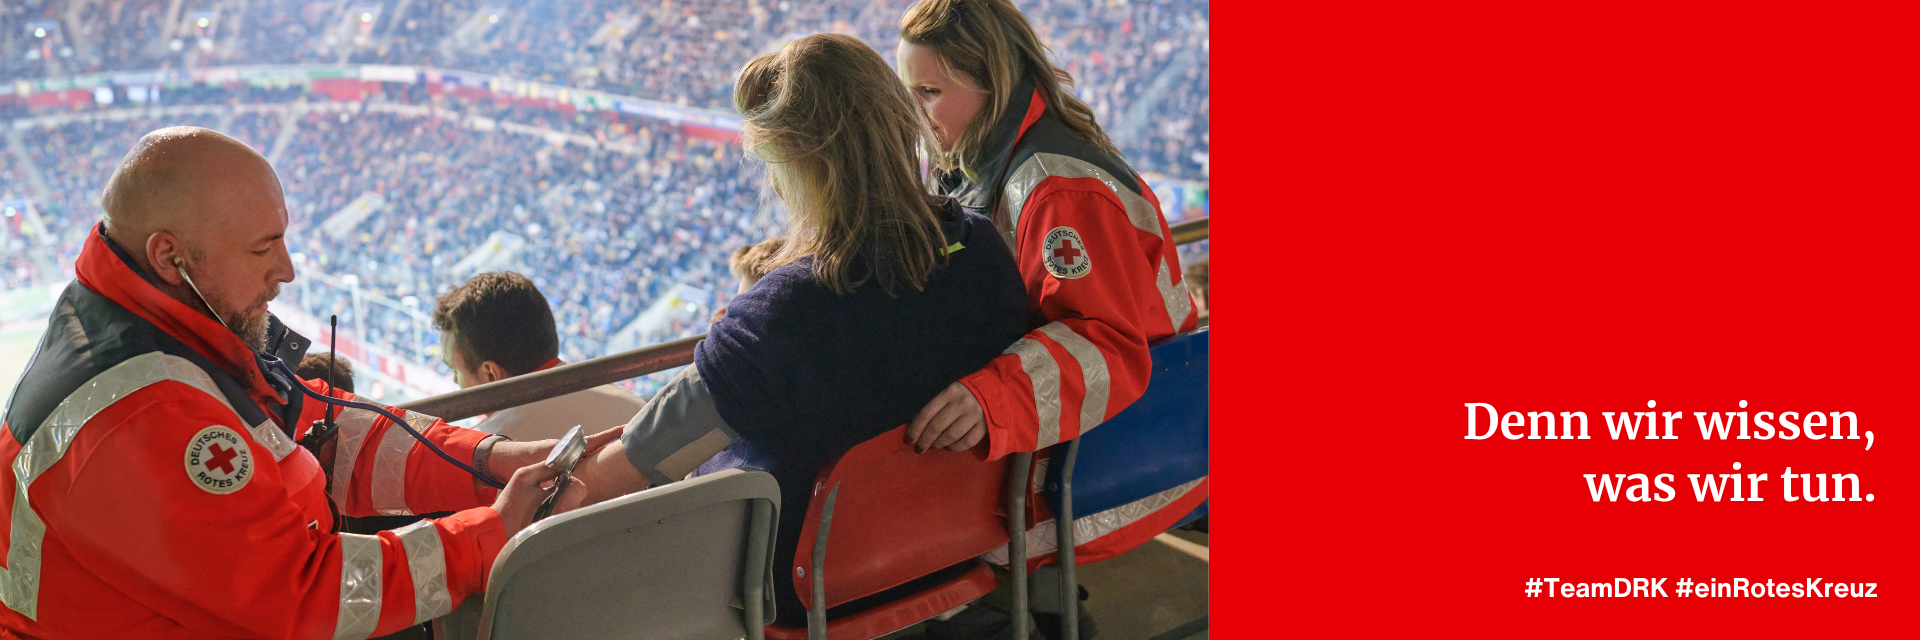 Eine männliche und eine weibliche Einsatzkraft des Deutschen Roten Kreuz versorgen eine Zuschauerin in einem Fußballstadion. Die männliche Einsatzkraft misst den Blutdruck der Zuschauerin.